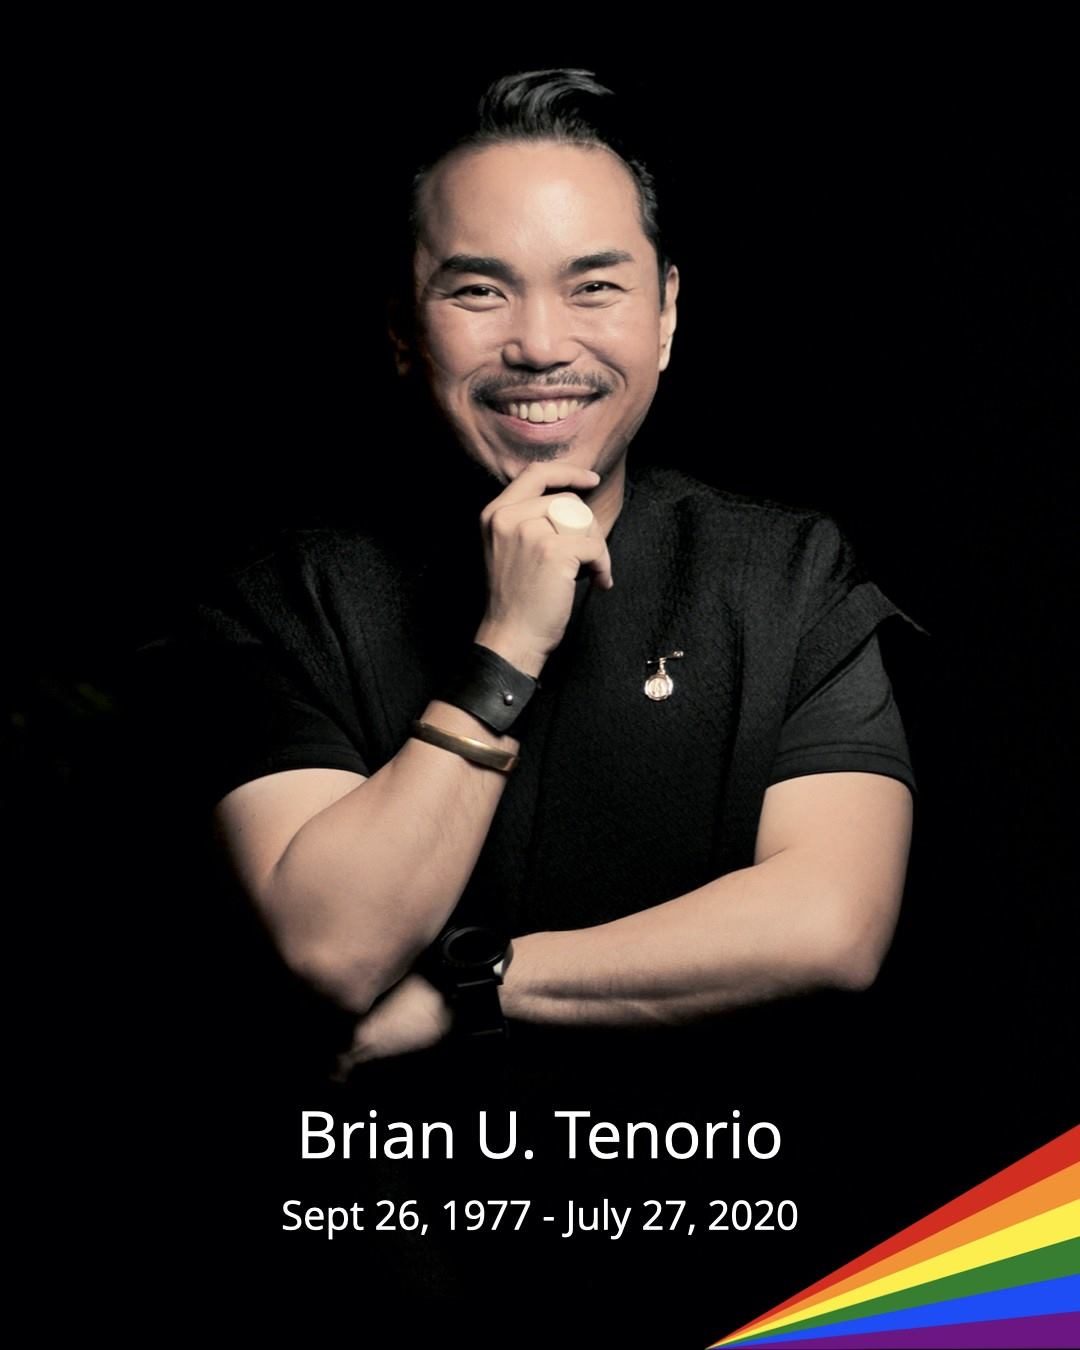 A ‘trailblazing creative’: Tributes pour in for Brian Tenorio